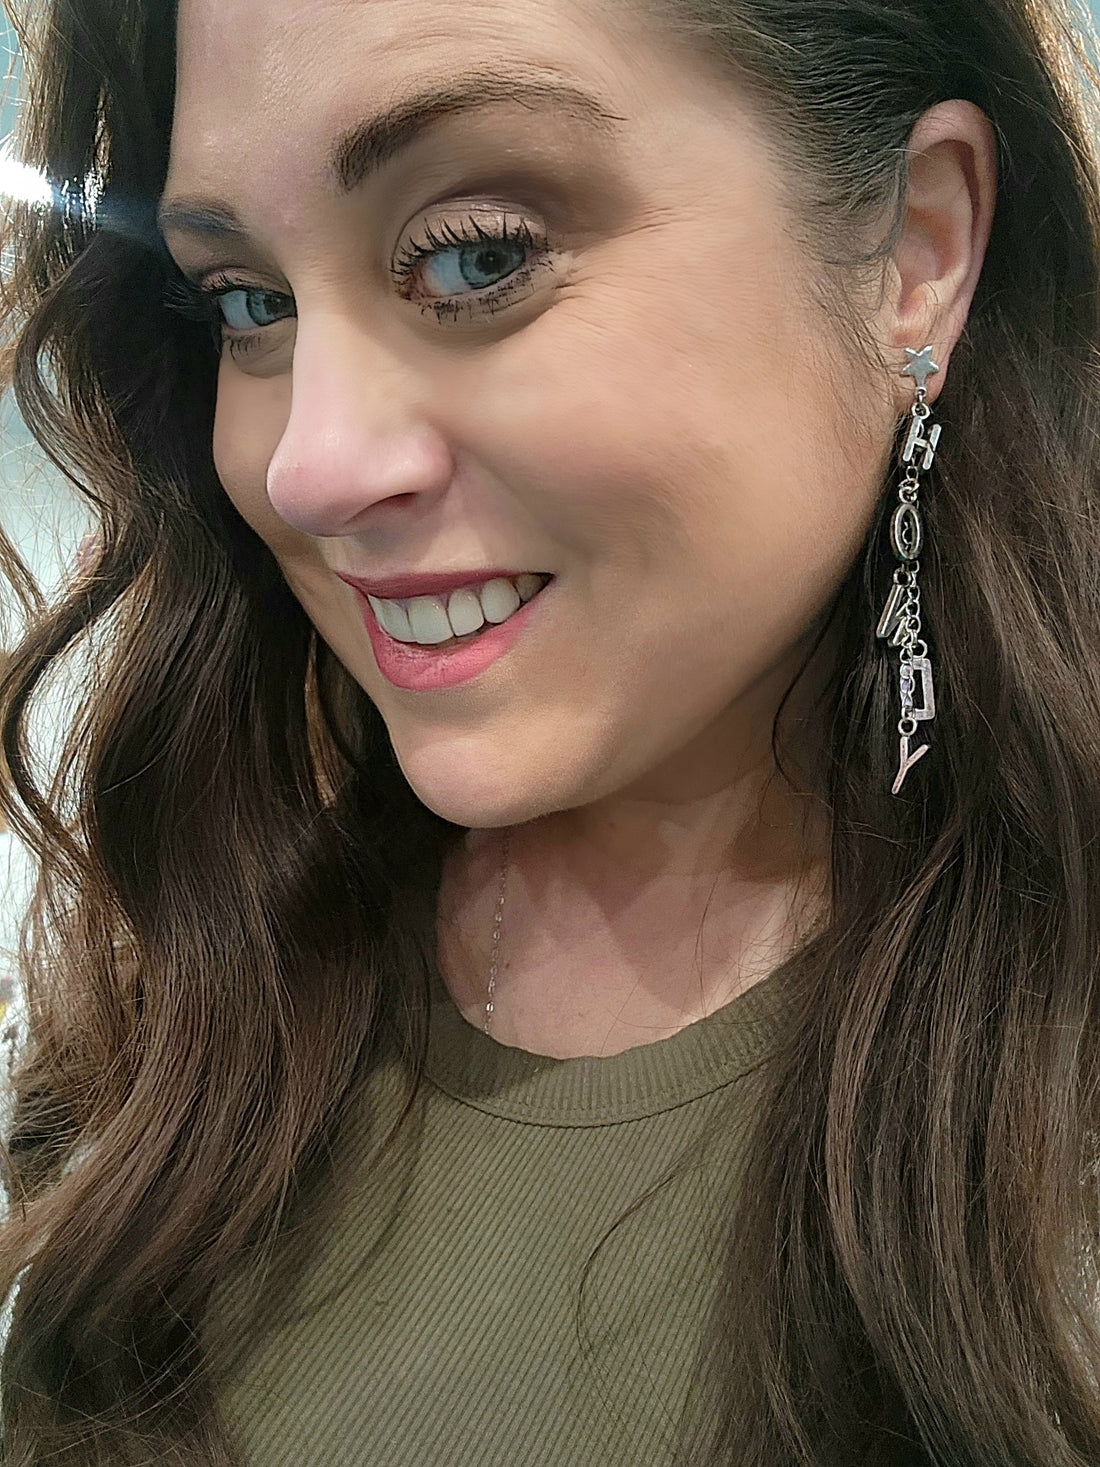 Howdy Earrings